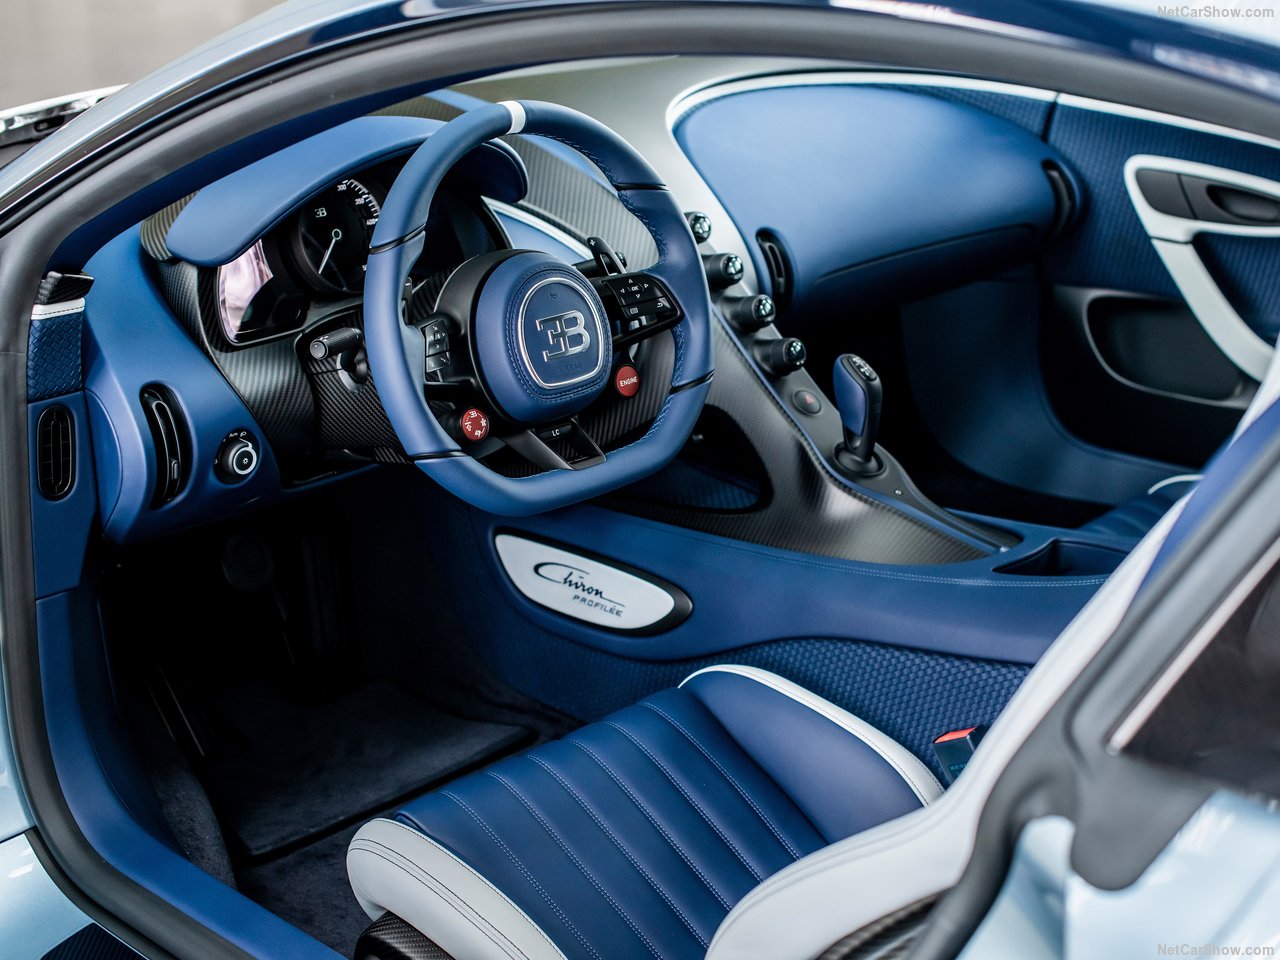 Bugatti предлагает покупателям последний шанс купить новый автомобиль с легендарным двигателем W16. Компания представила Chiron Profilée, единственный в своем роде экземпляр, который не будет выпускаться в серийном производстве Chiron, Mistral и Boli